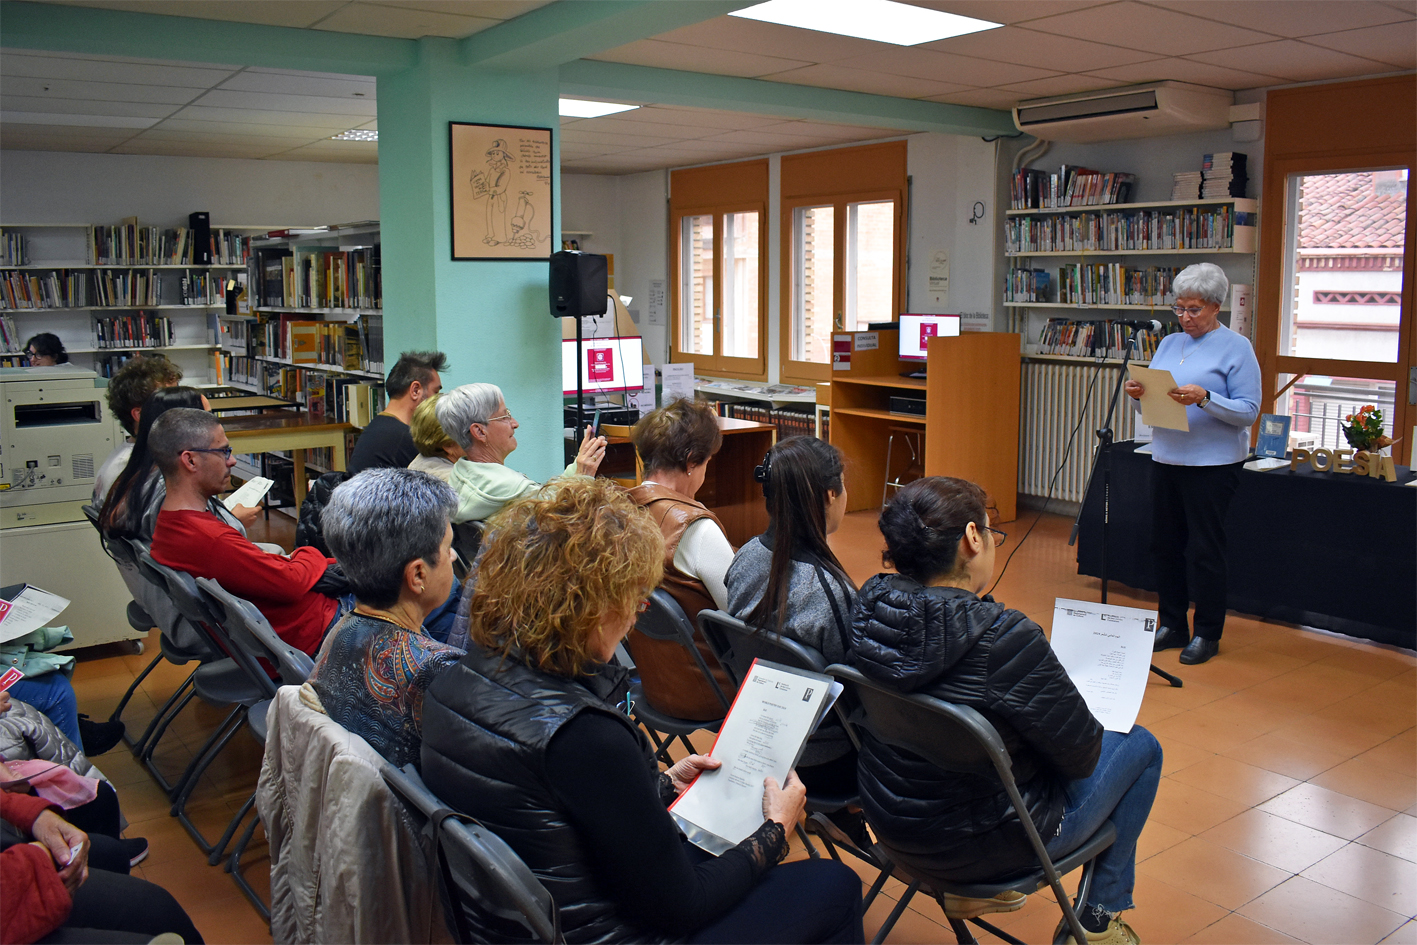 Súria inicia la celebració del Dia Mundial de la Poesia amb la lectura d'un poema d'Estellés en diferents llengües a la Biblioteca Pública 